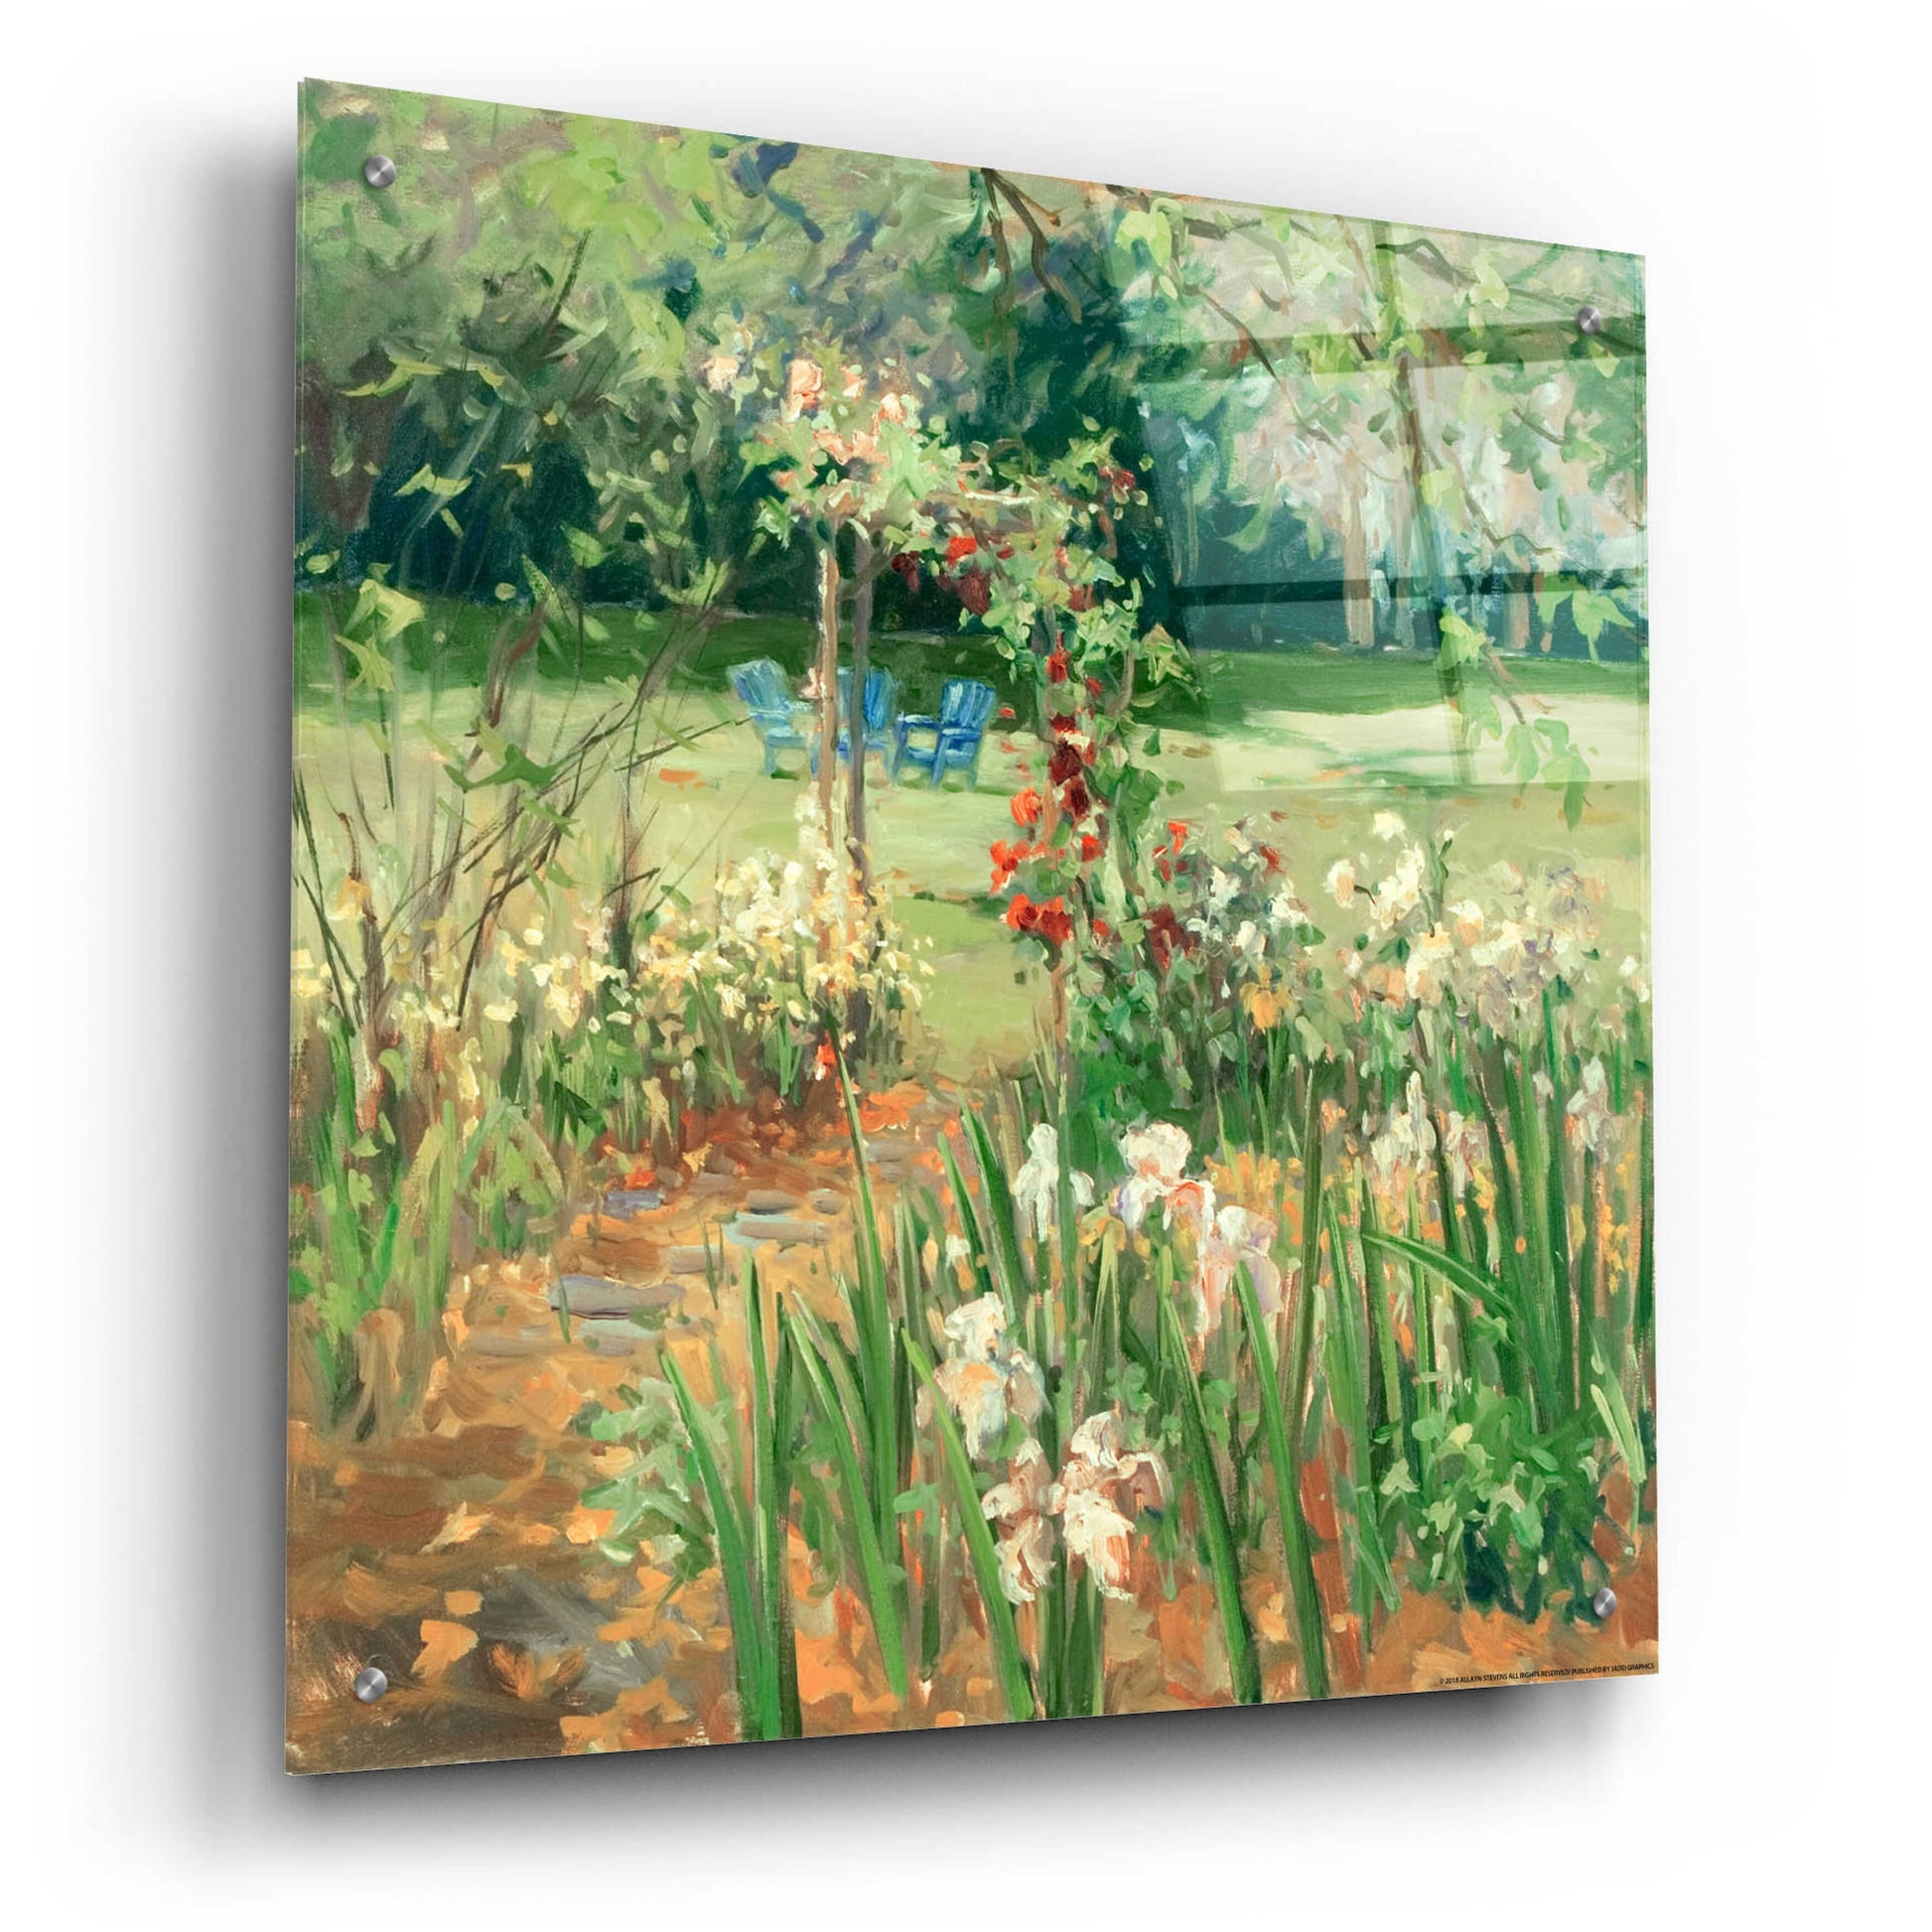 Epic Art 'Iris Garden' by Allayn Stevens, Acrylic Glass Wall Art,24x24